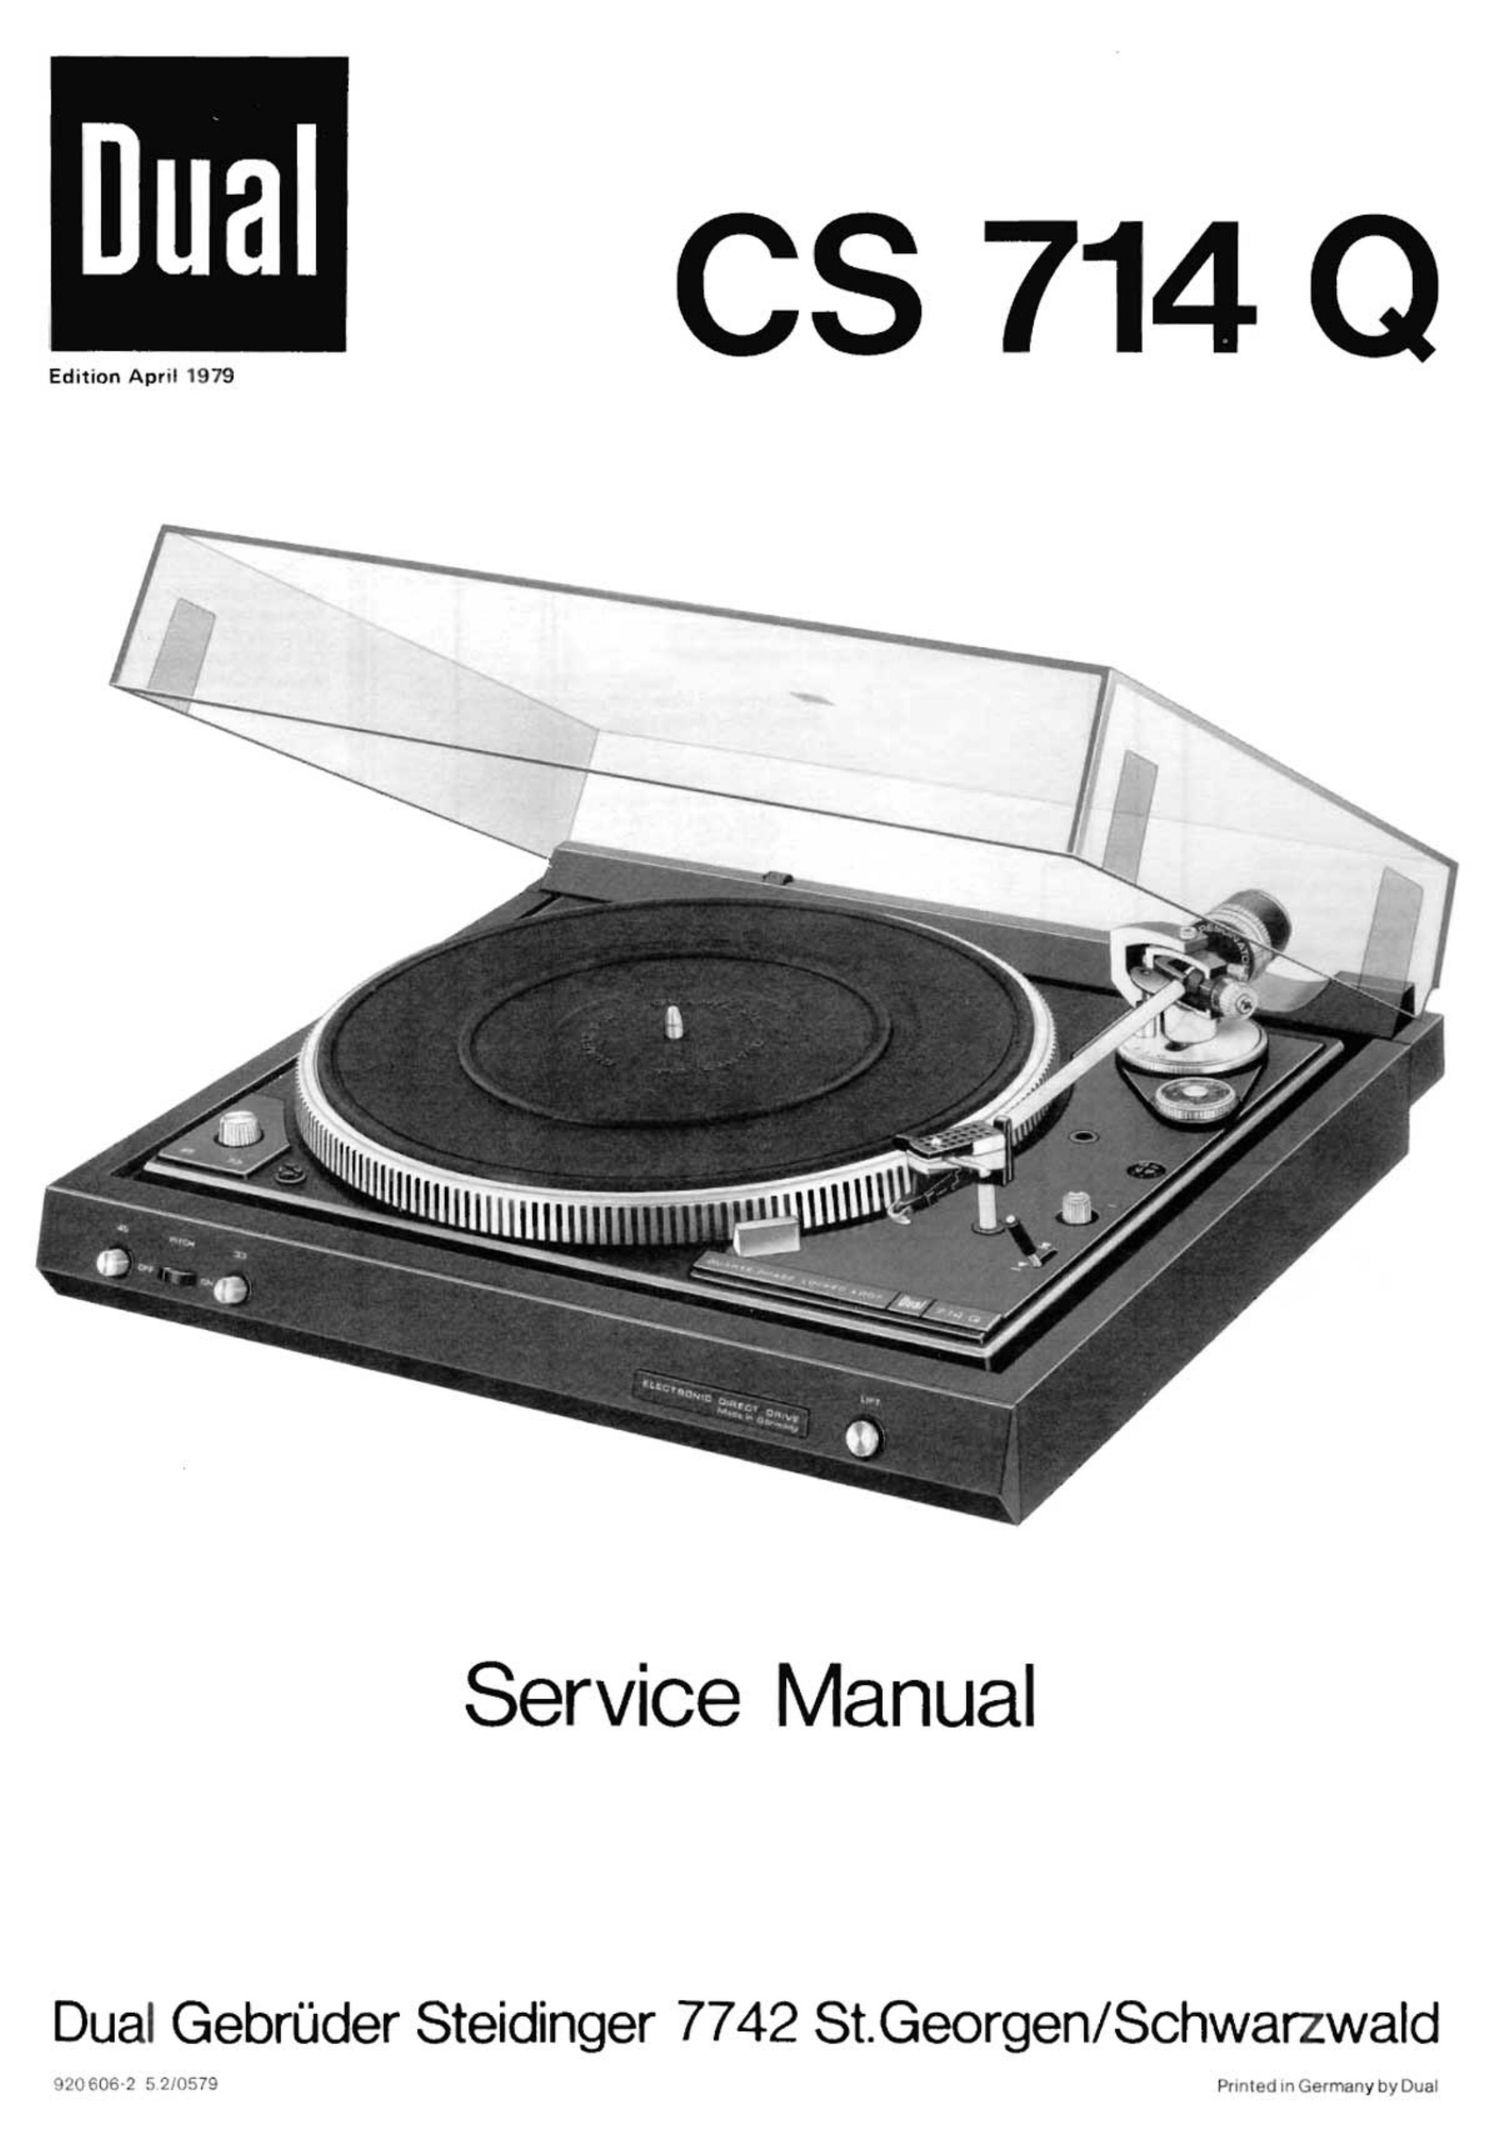 Dual CS 714 Q Service Manual